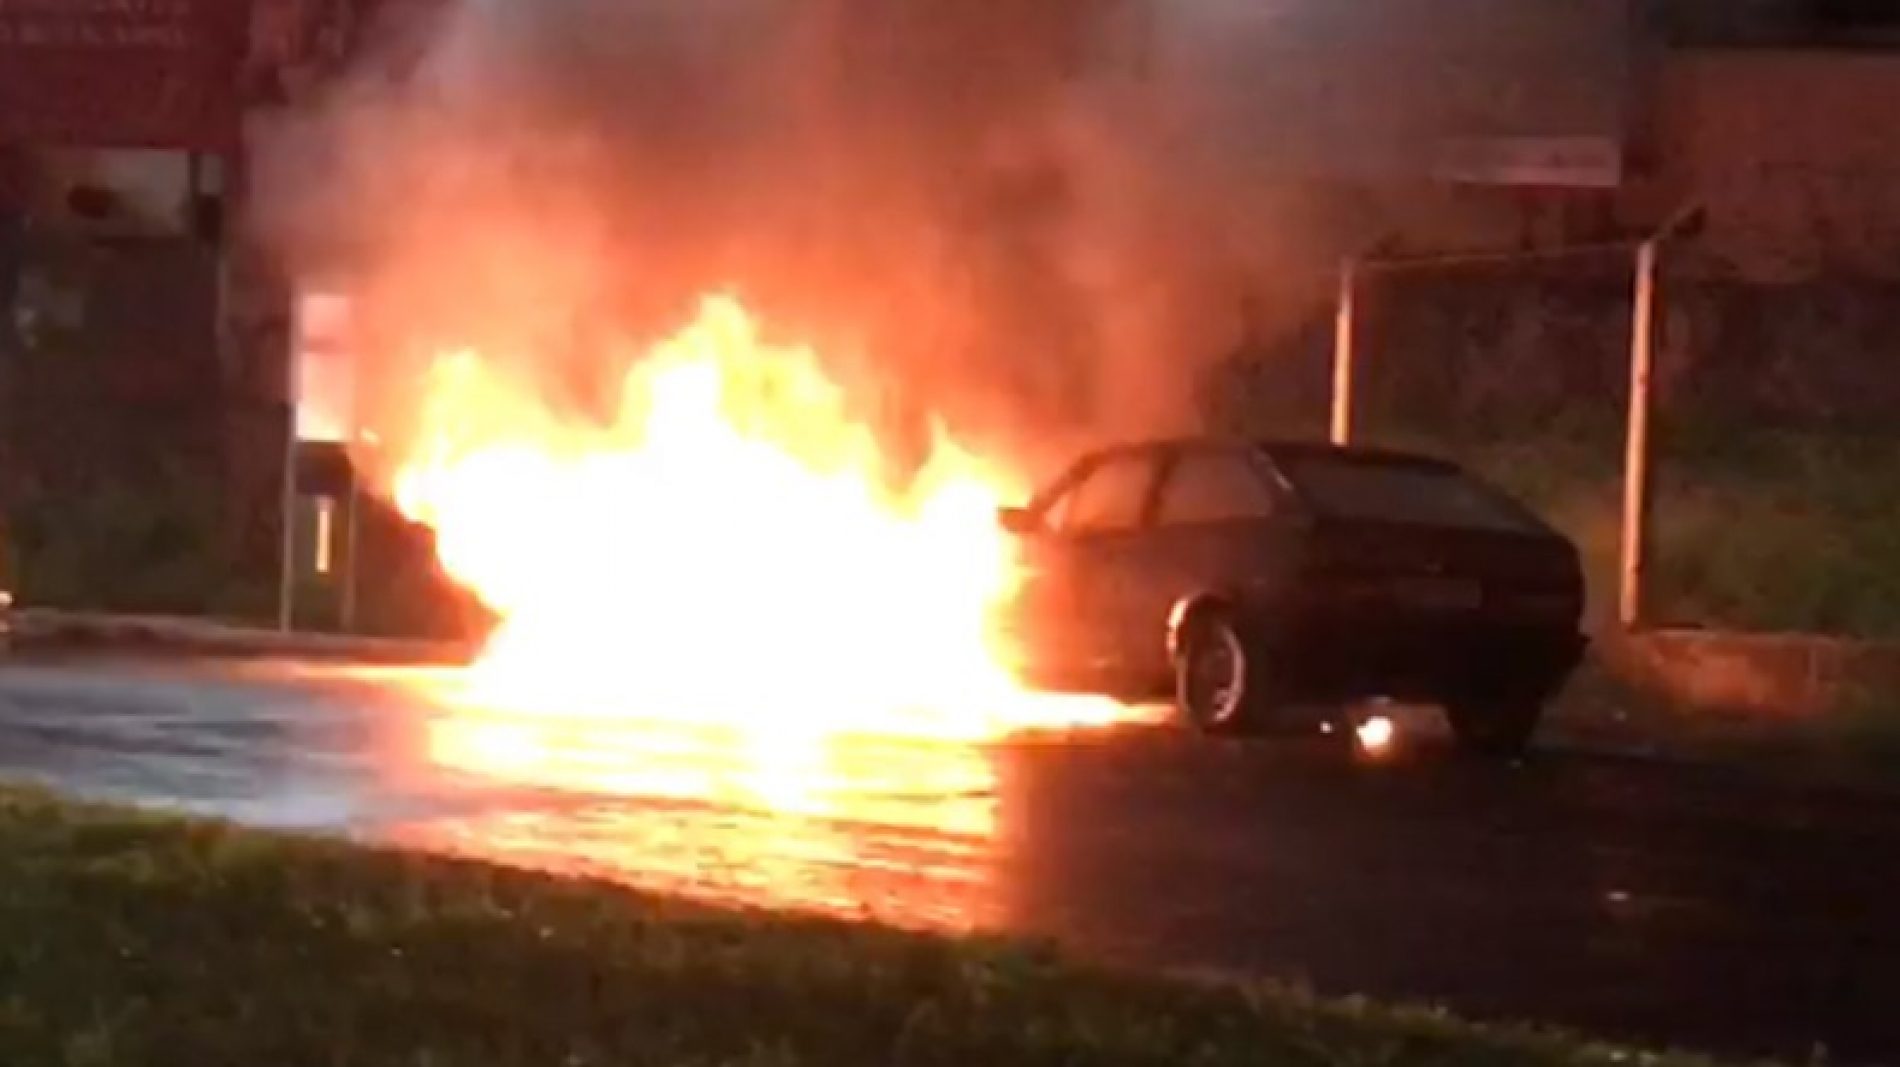 REGIÃO: Mulher suspeita que ex do namorado incendiou seu carro